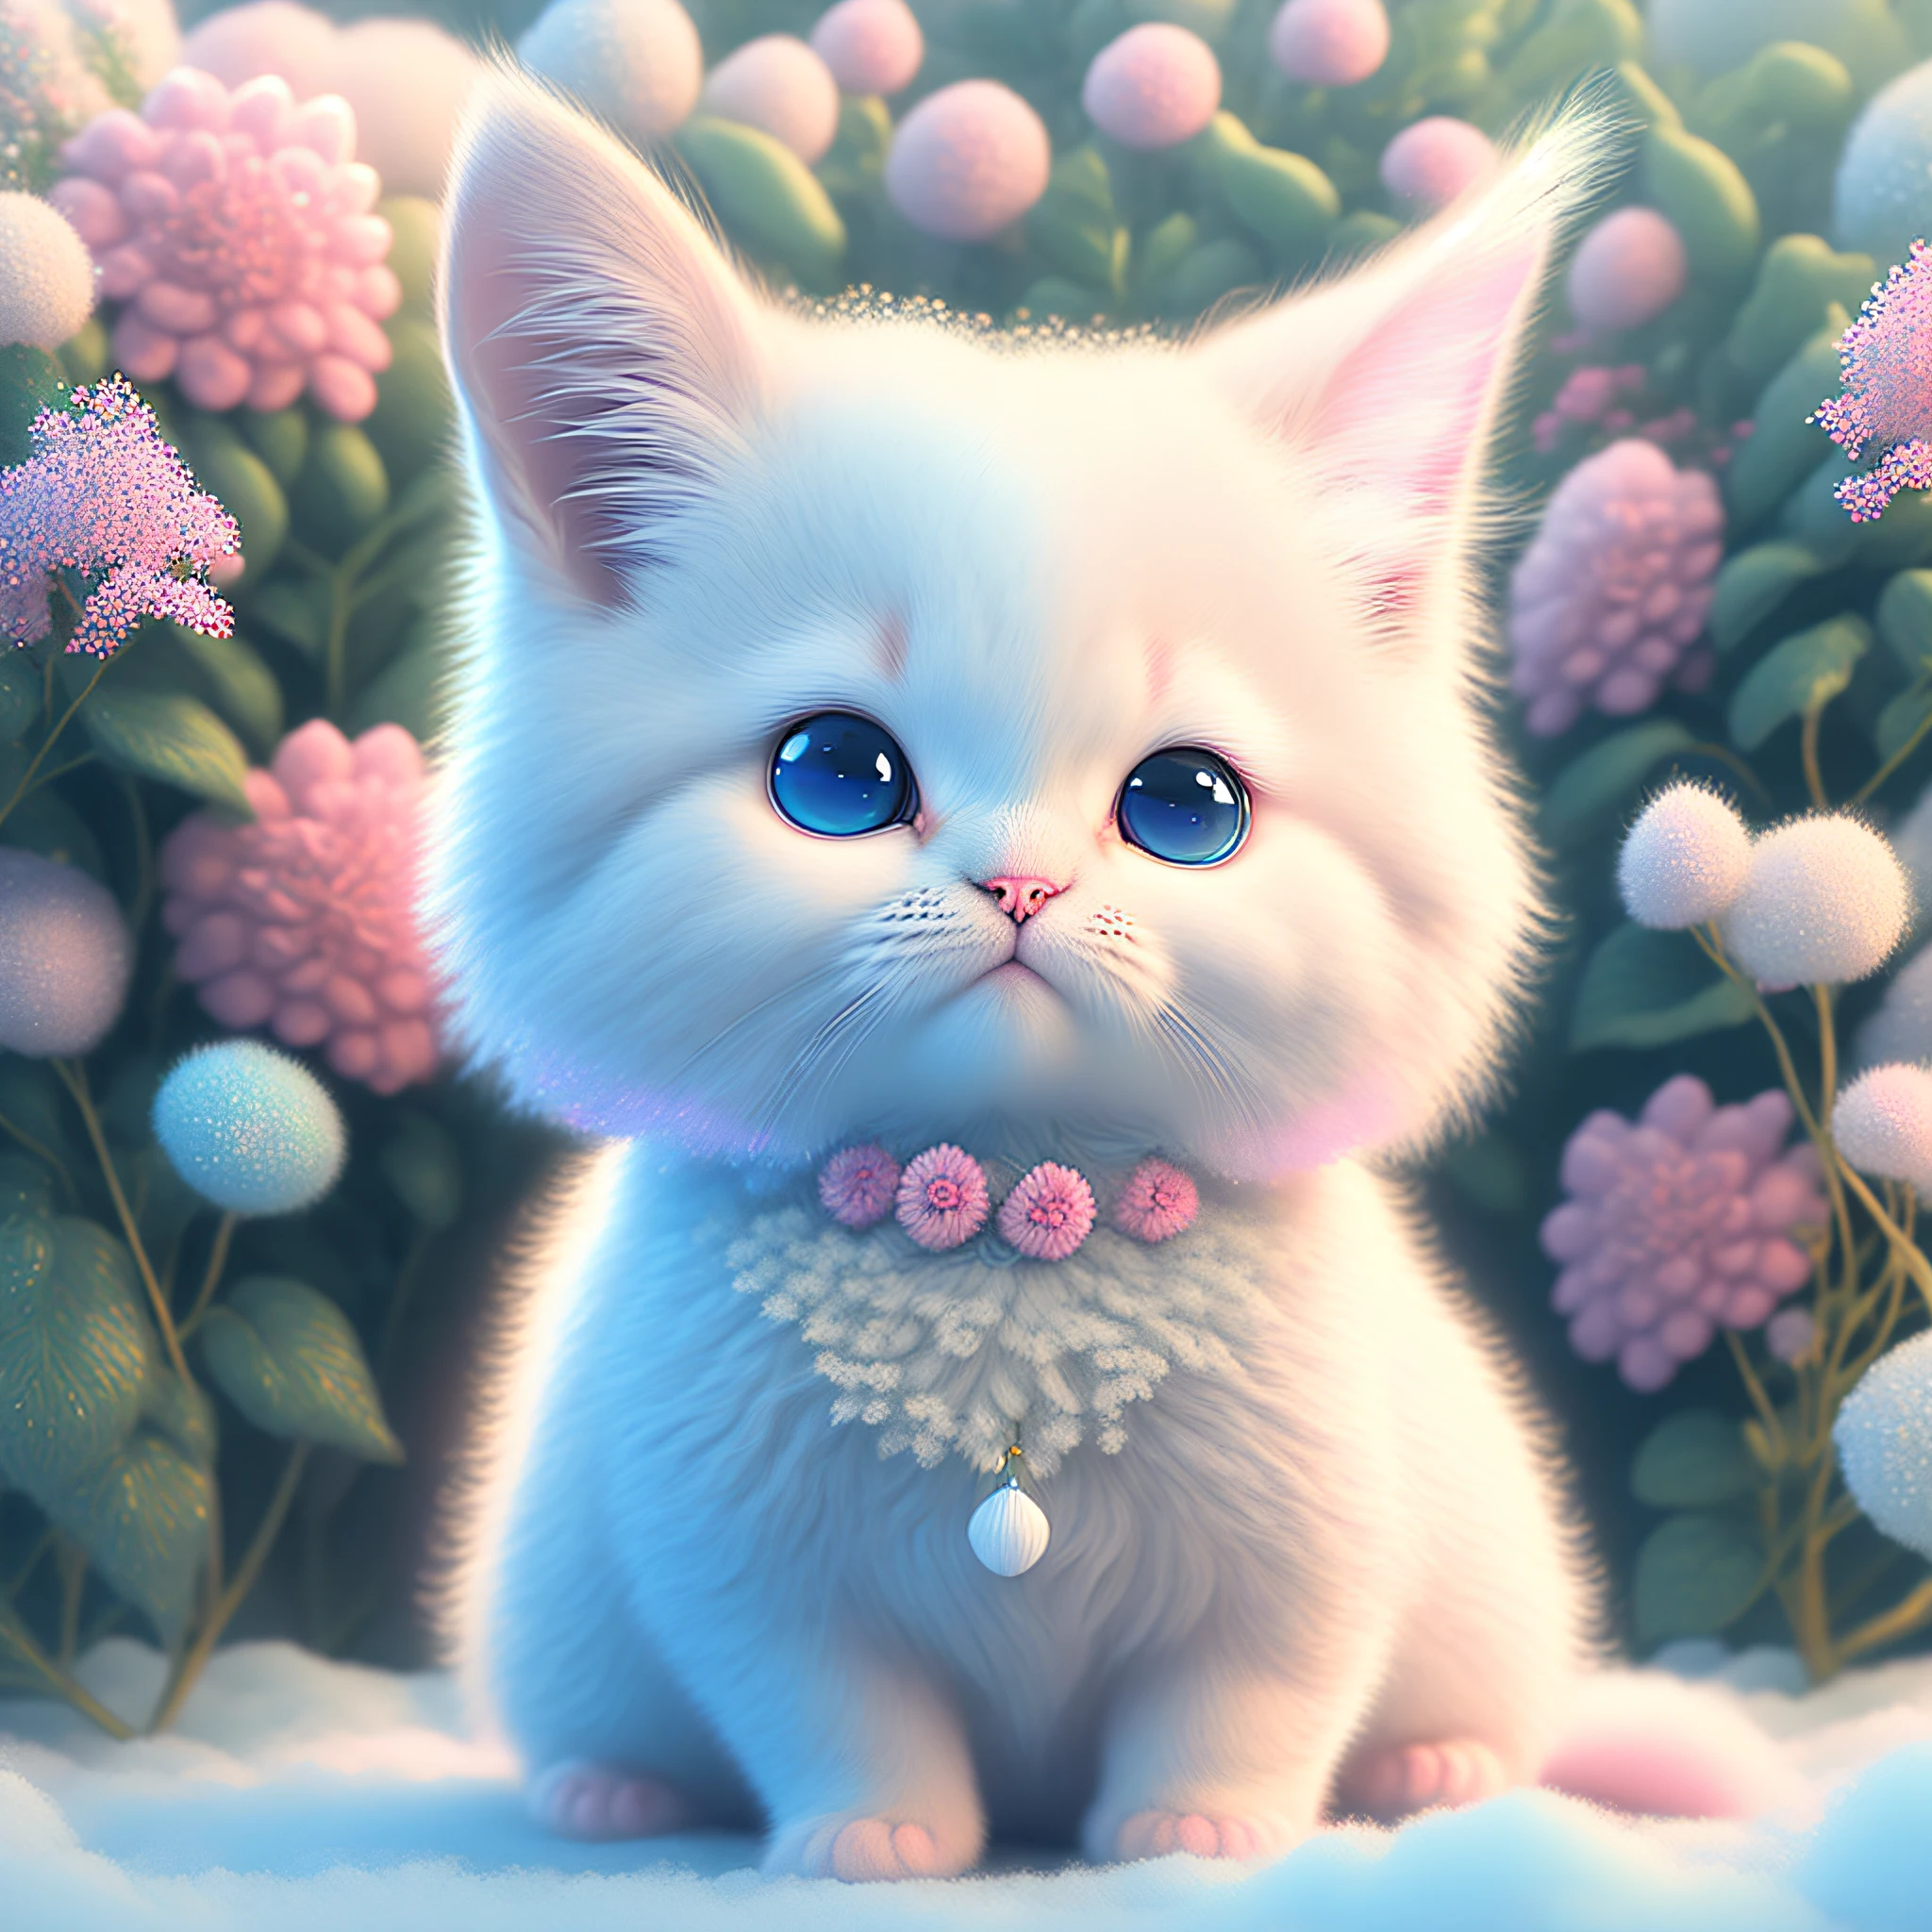 In dieser ultra-detaillierten CG-Kunst, das entzückende Kätzchen umgeben von Blumen, Pastell- und Neonfarben, beste Qualität, hohe Auflösung, komplizierte Details, Fantasie, süße Tiere